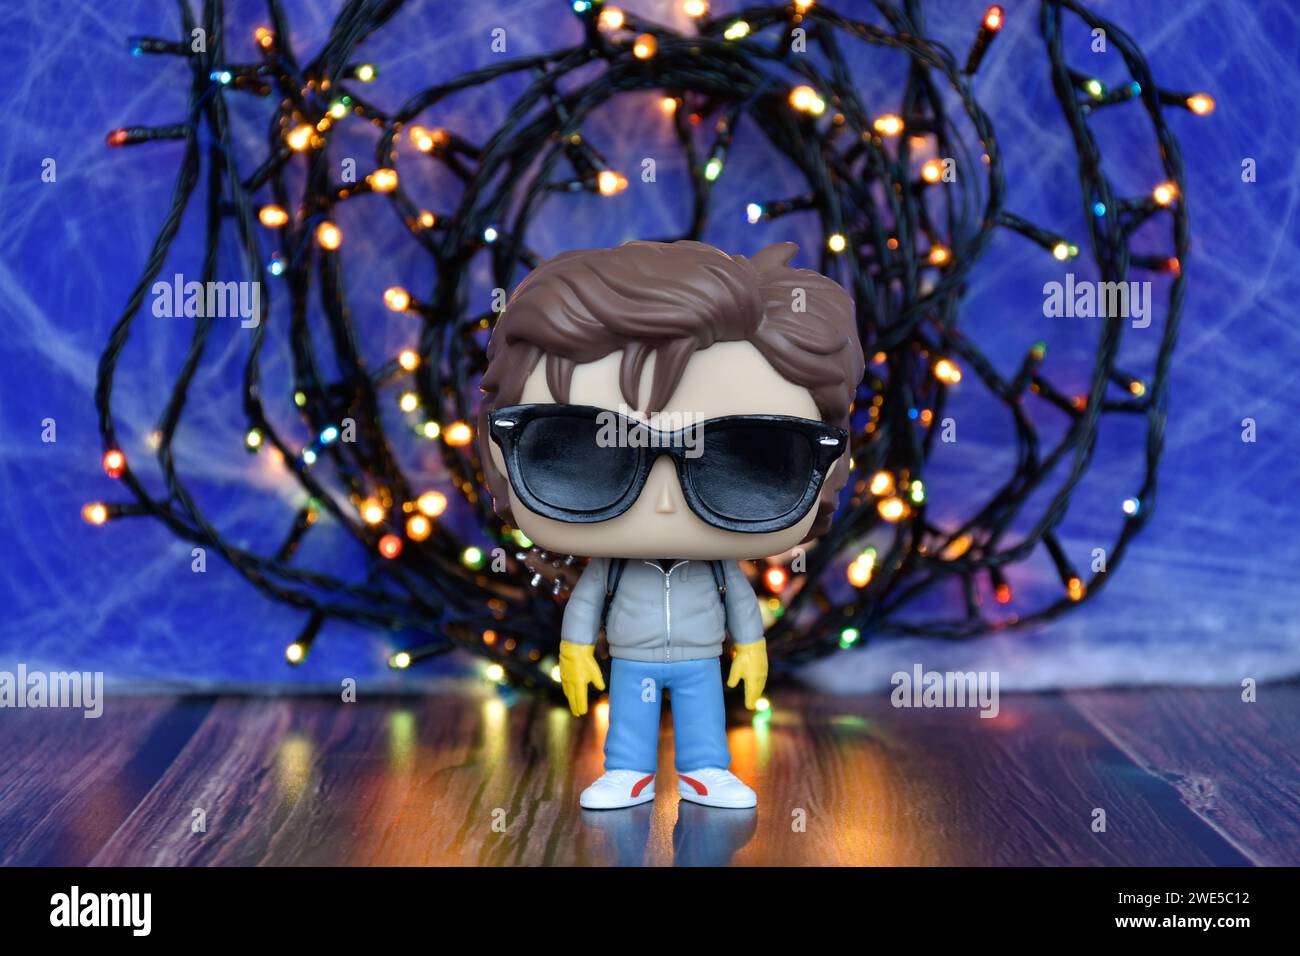 Funko Pop Actionfigur von Steve mit Sonnenbrille aus der beliebten Netflix TV-Serie Stranger Things. Blauer nebeliger Hintergrund, bunte Lichter, gespendet. Stockfoto